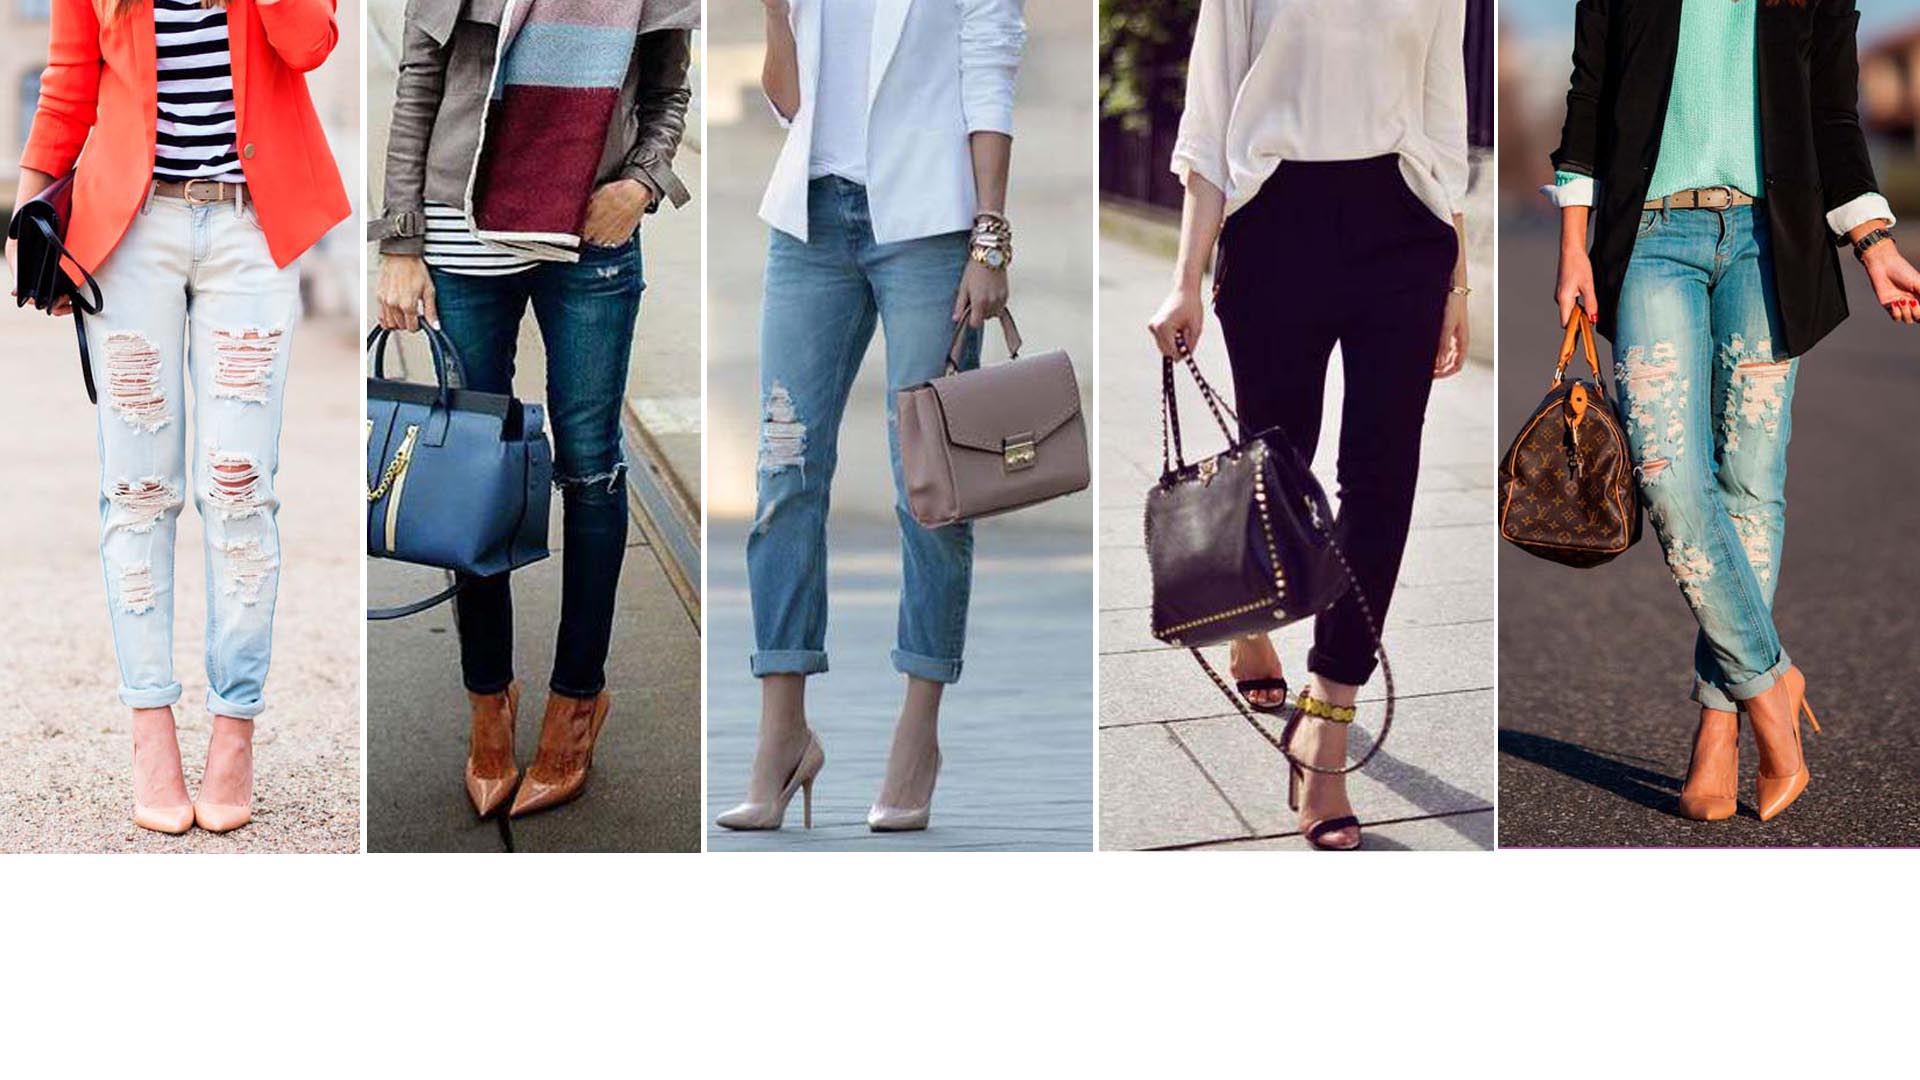 Los zapatos altos siempre son referencia de elegancia, ahora los puedes usar con jeans y verte totalmente presentable